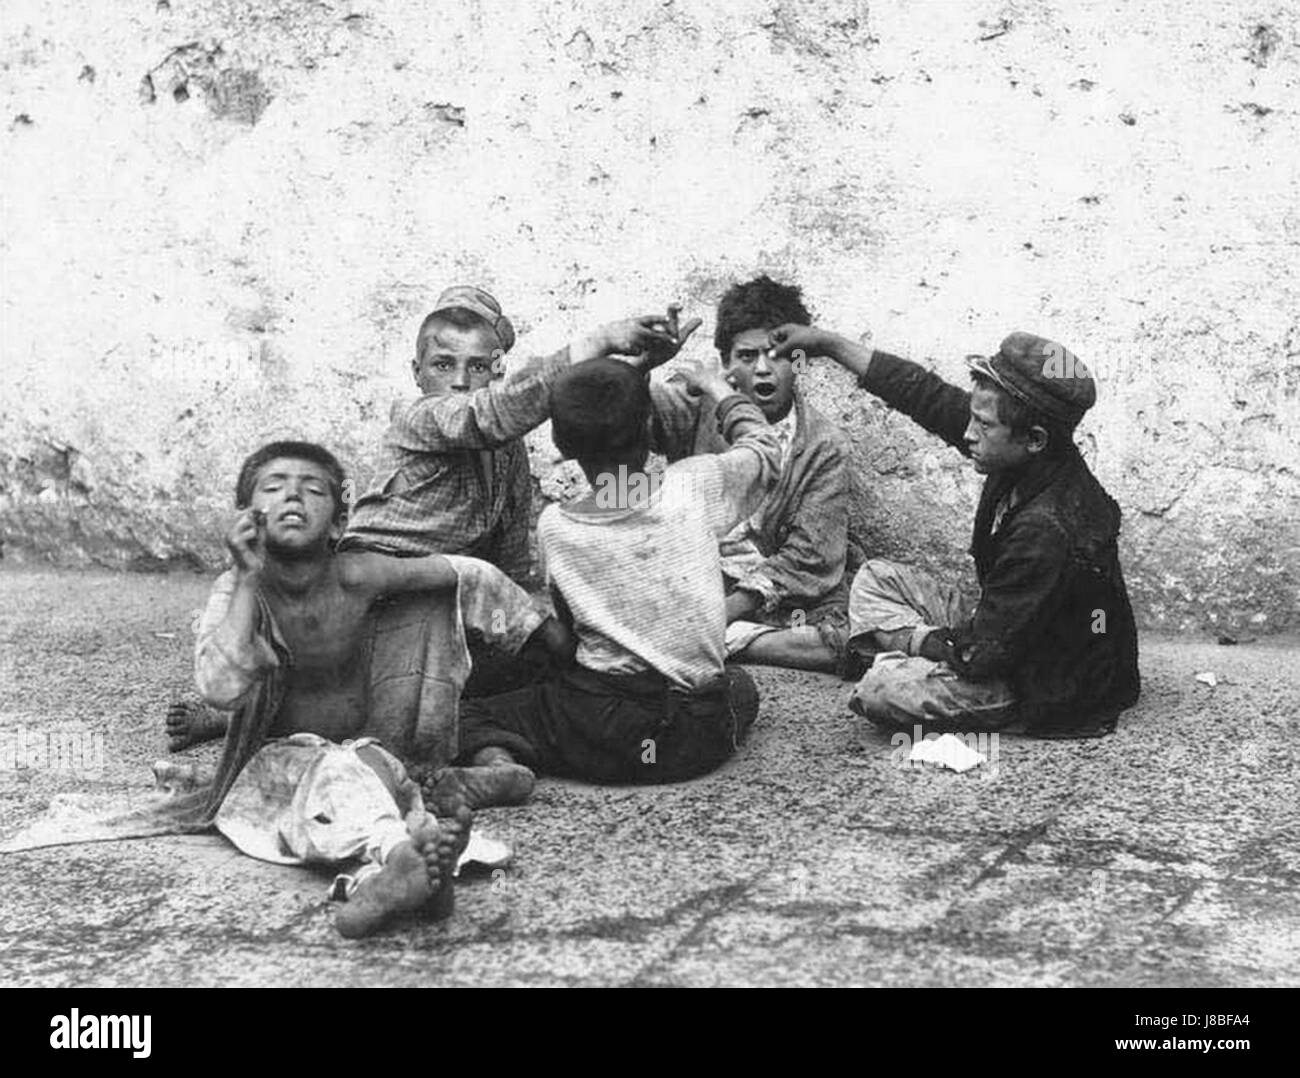 Fratelli Alinari   Il giuoco della morra   Street children playing morra in Naples, Italy in 1890s Stock Photo